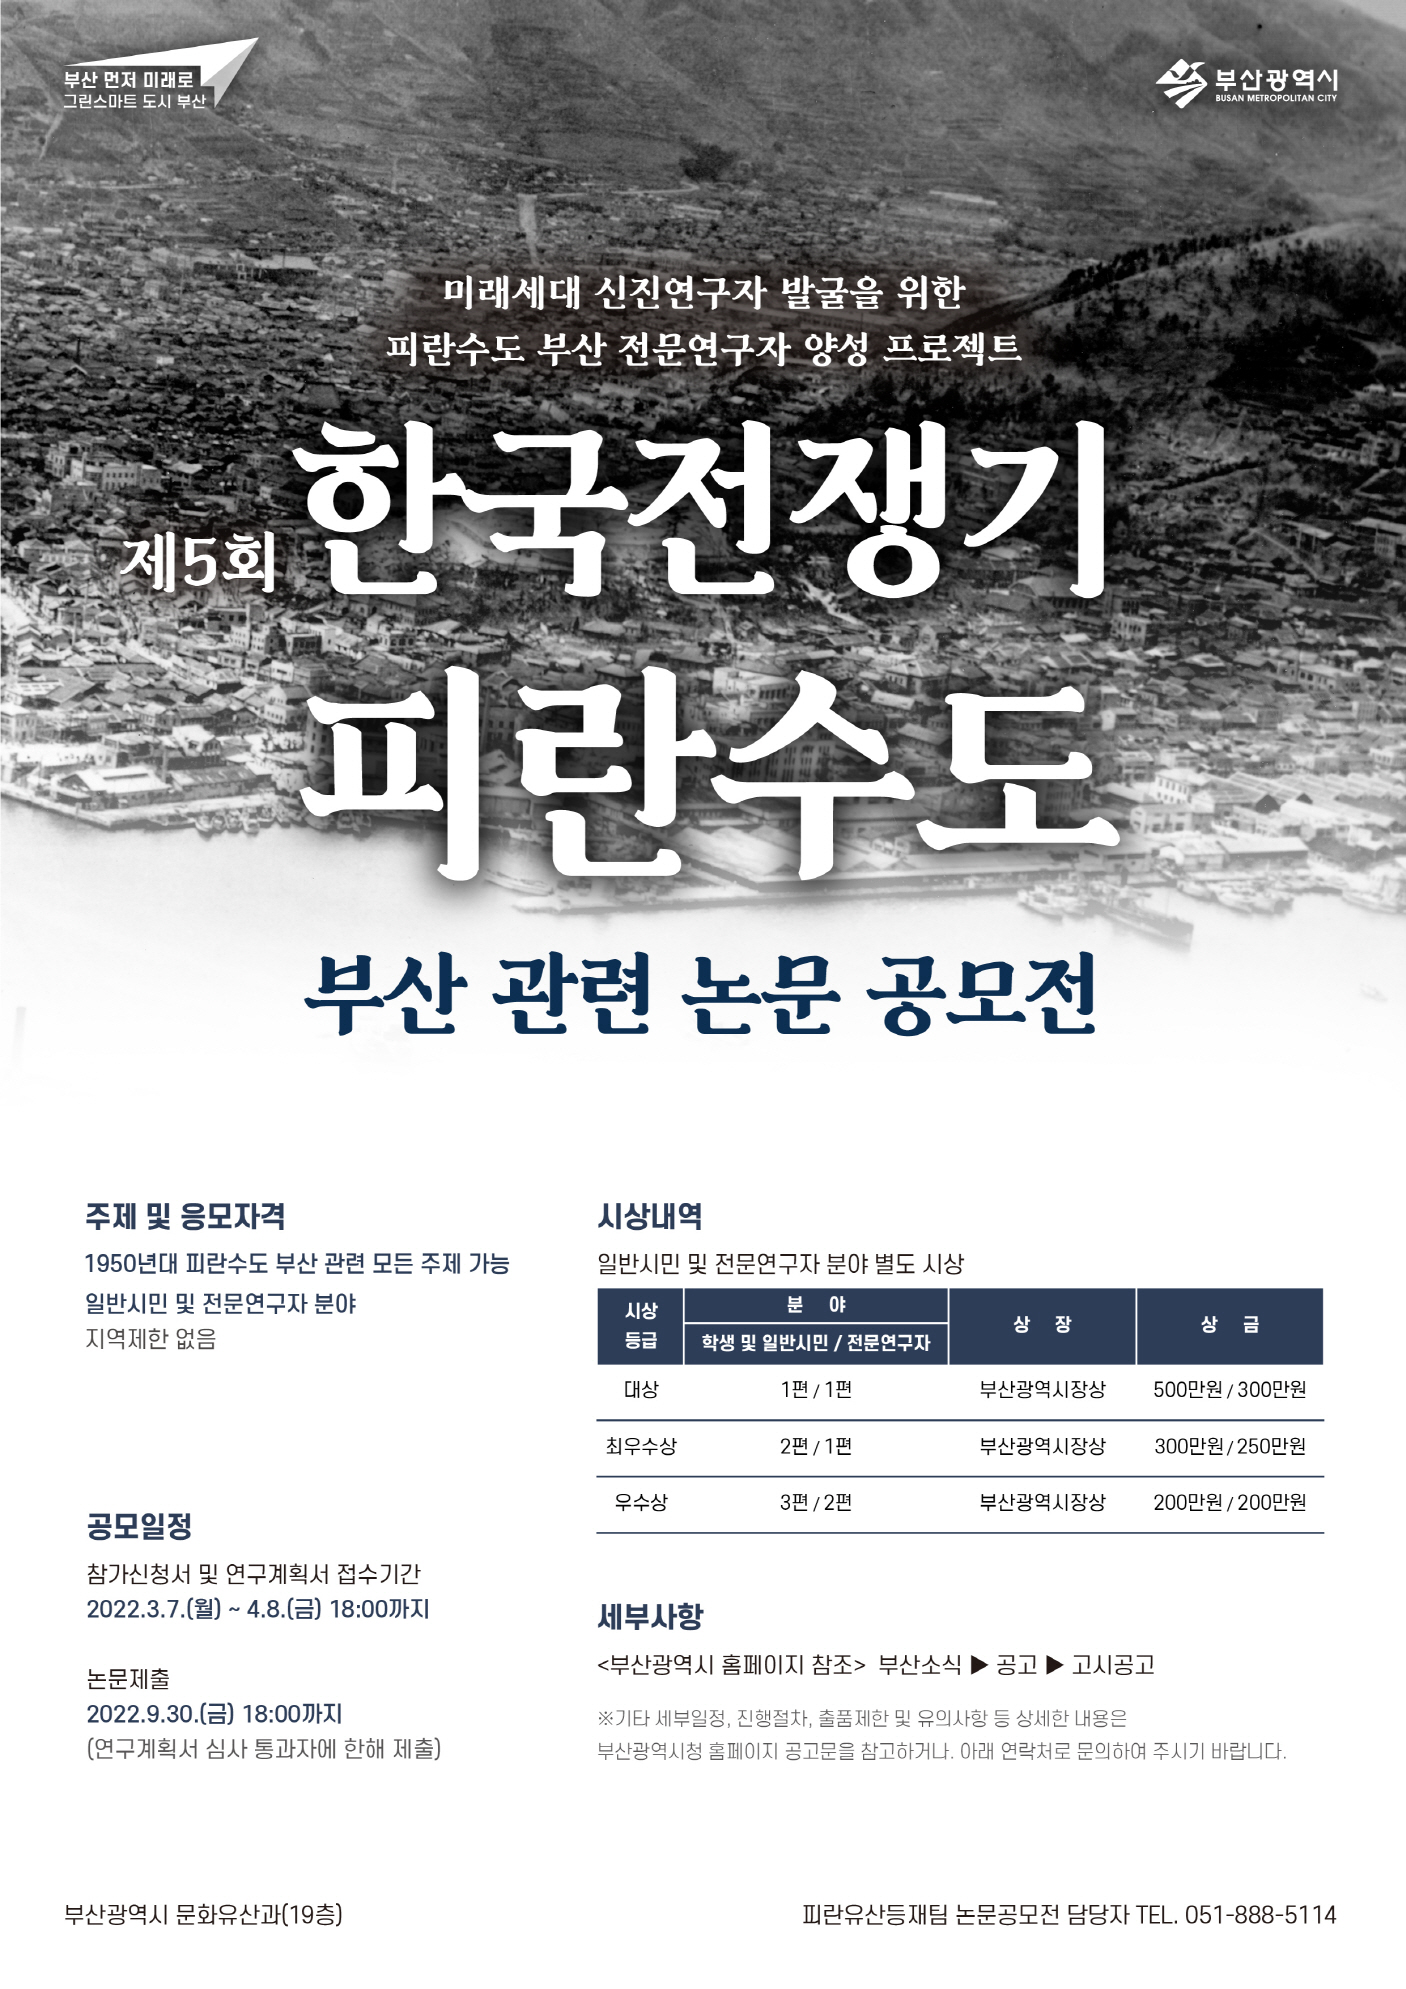 [공모전] 제5회 한국전쟁기 피란수도 부산 논문 공모전 안내